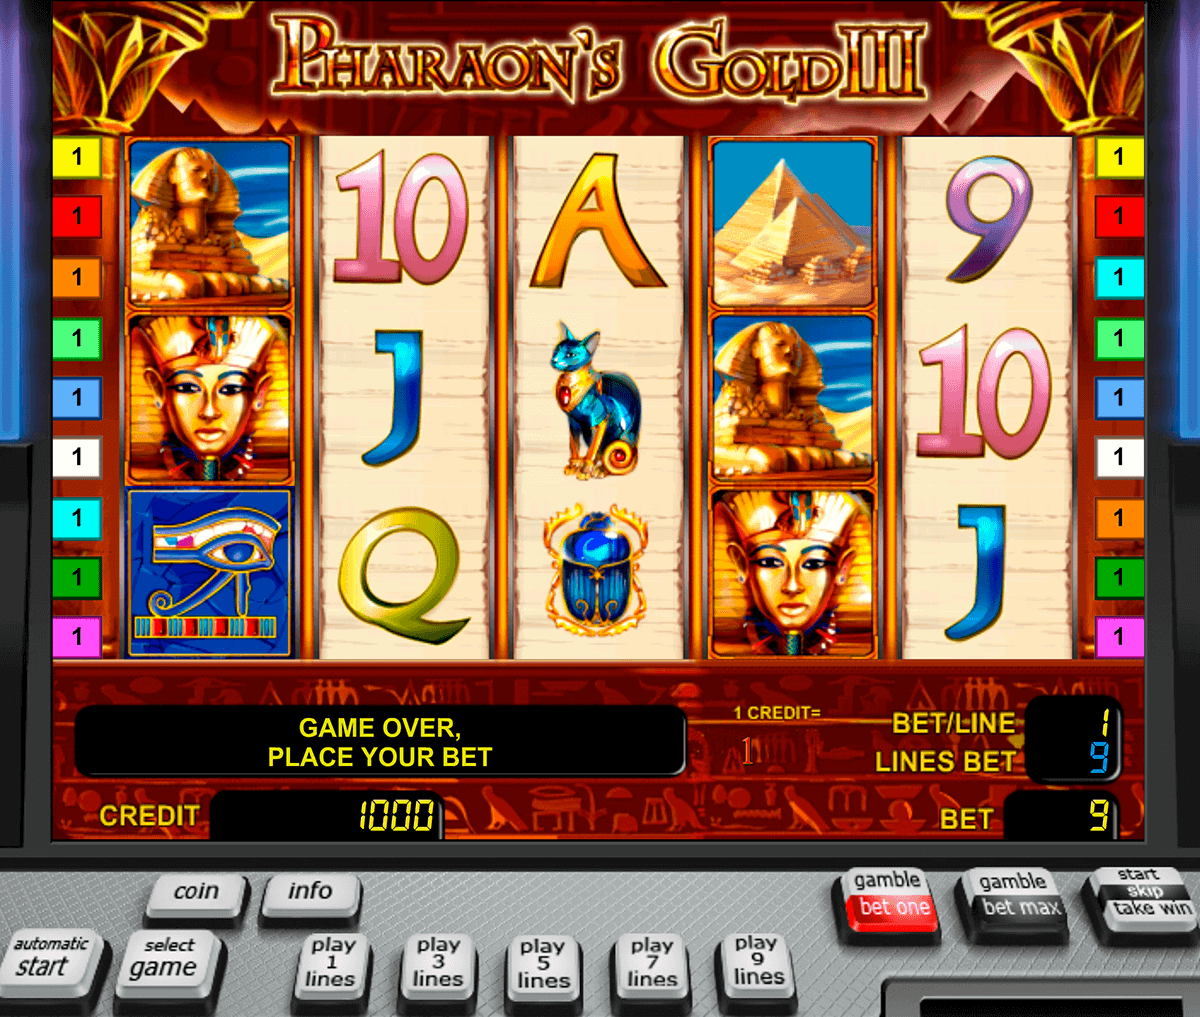 Download Pharaoh Slots